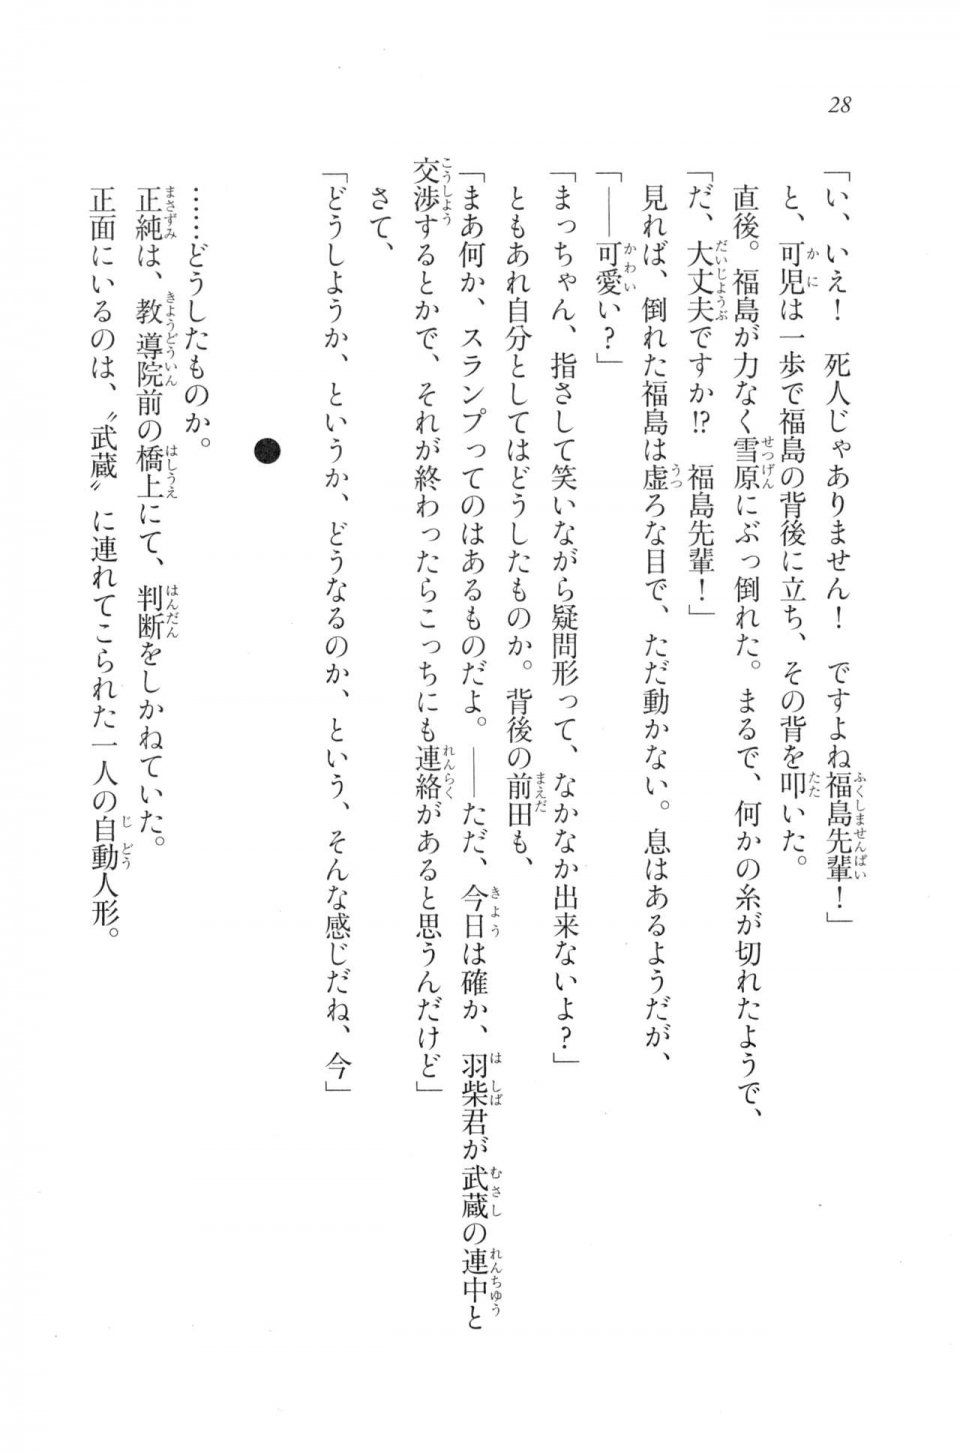 Kyoukai Senjou no Horizon LN Vol 20(8B) - Photo #28